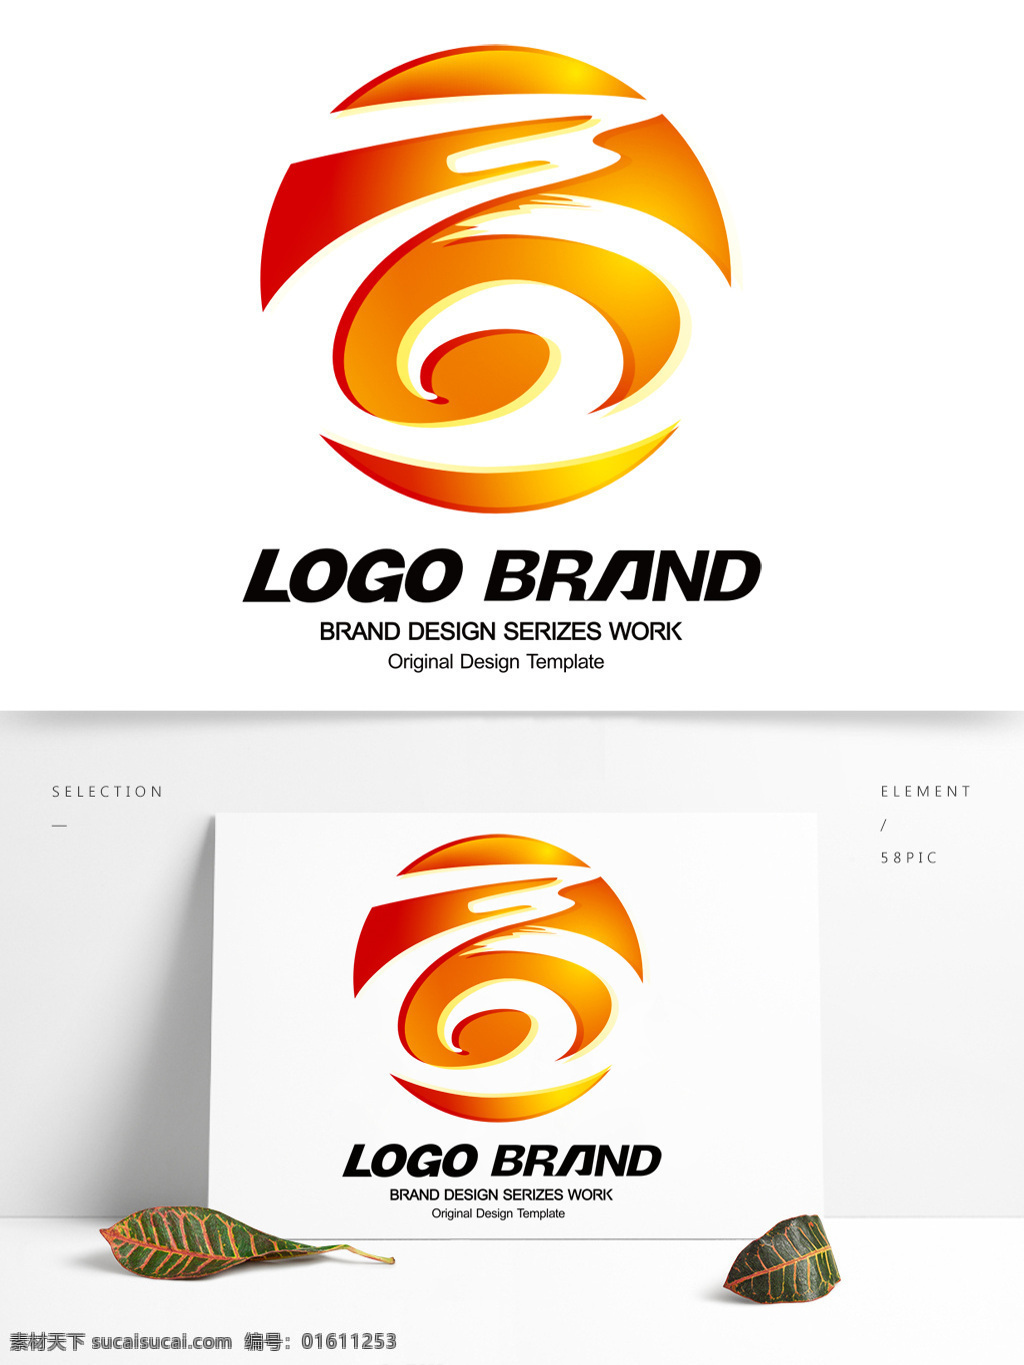 矢量 创意 红蓝 飘带 公司 标志 logo c 字母 标志设计 商字标志设计 公司标志设计 企业 会徽标志设计 企业标志设计